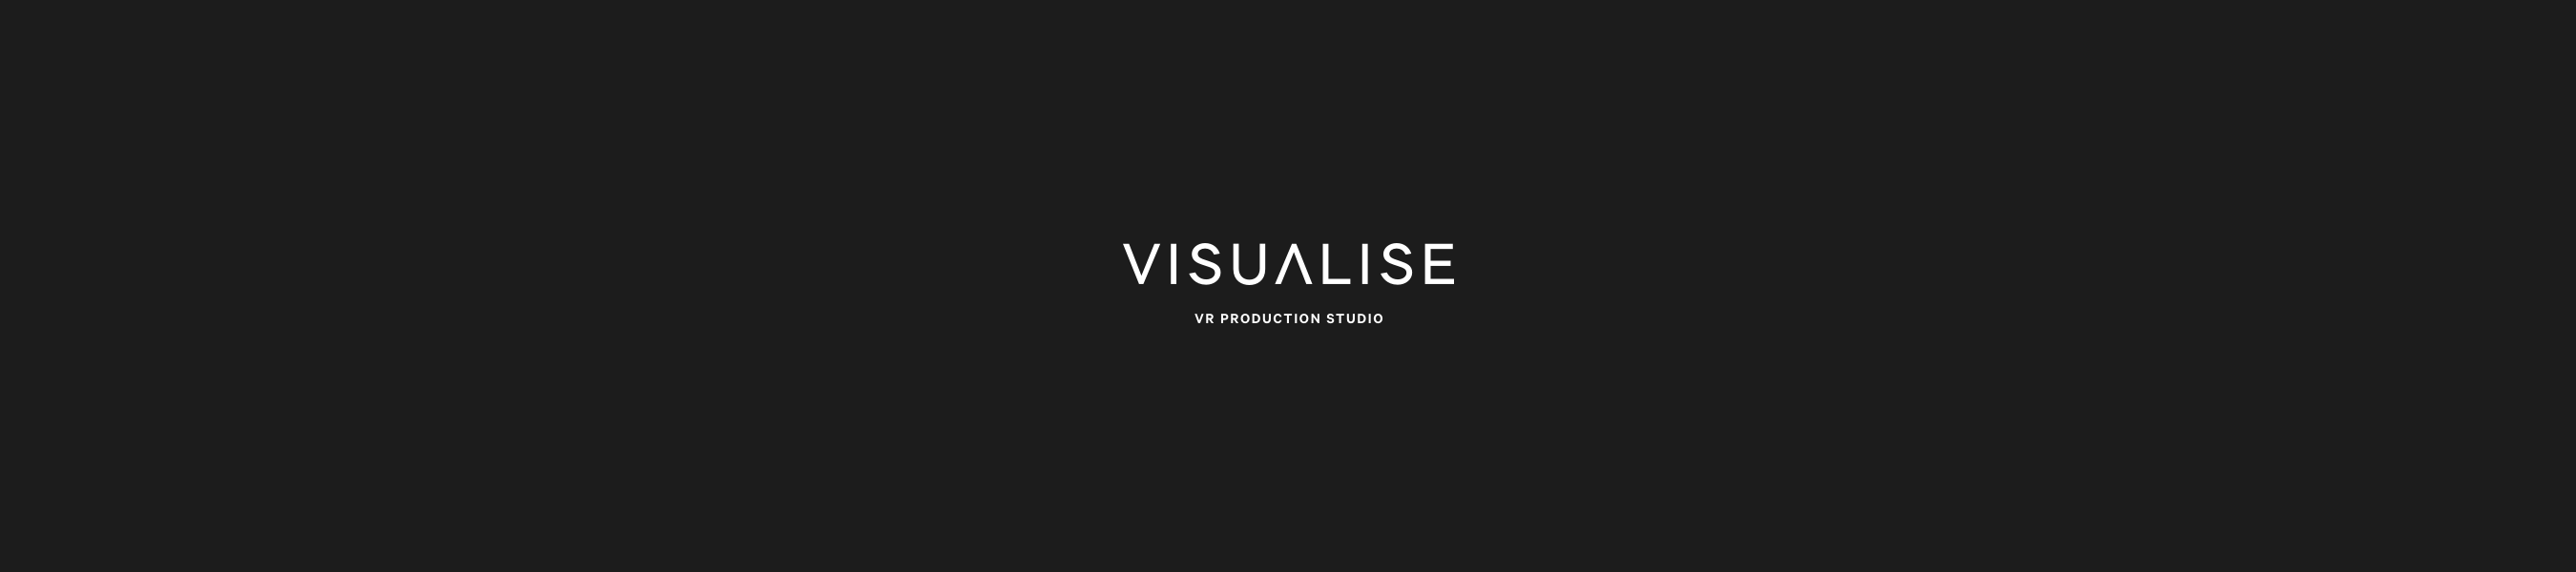 App-Header-Visuals_V2